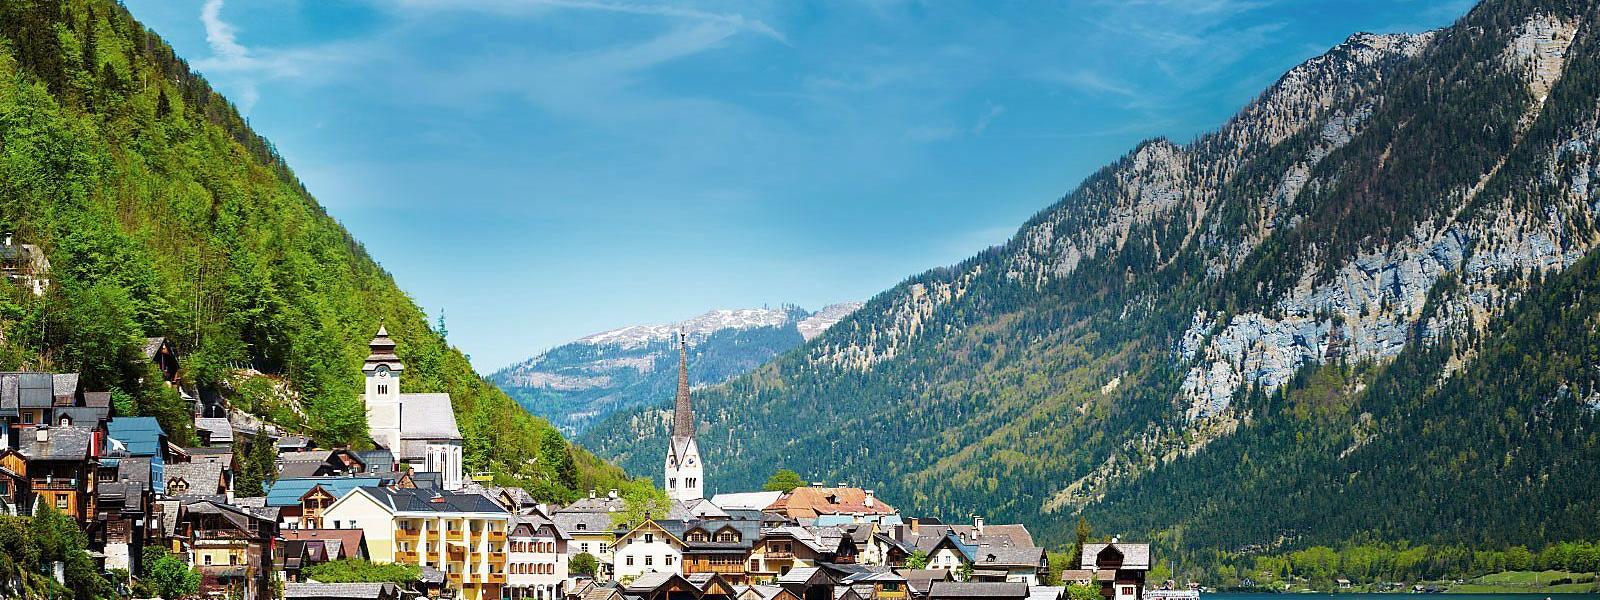 Ferienwohnungen und Ferienhäuser in den Kitzbüheler Alpen - atraveo